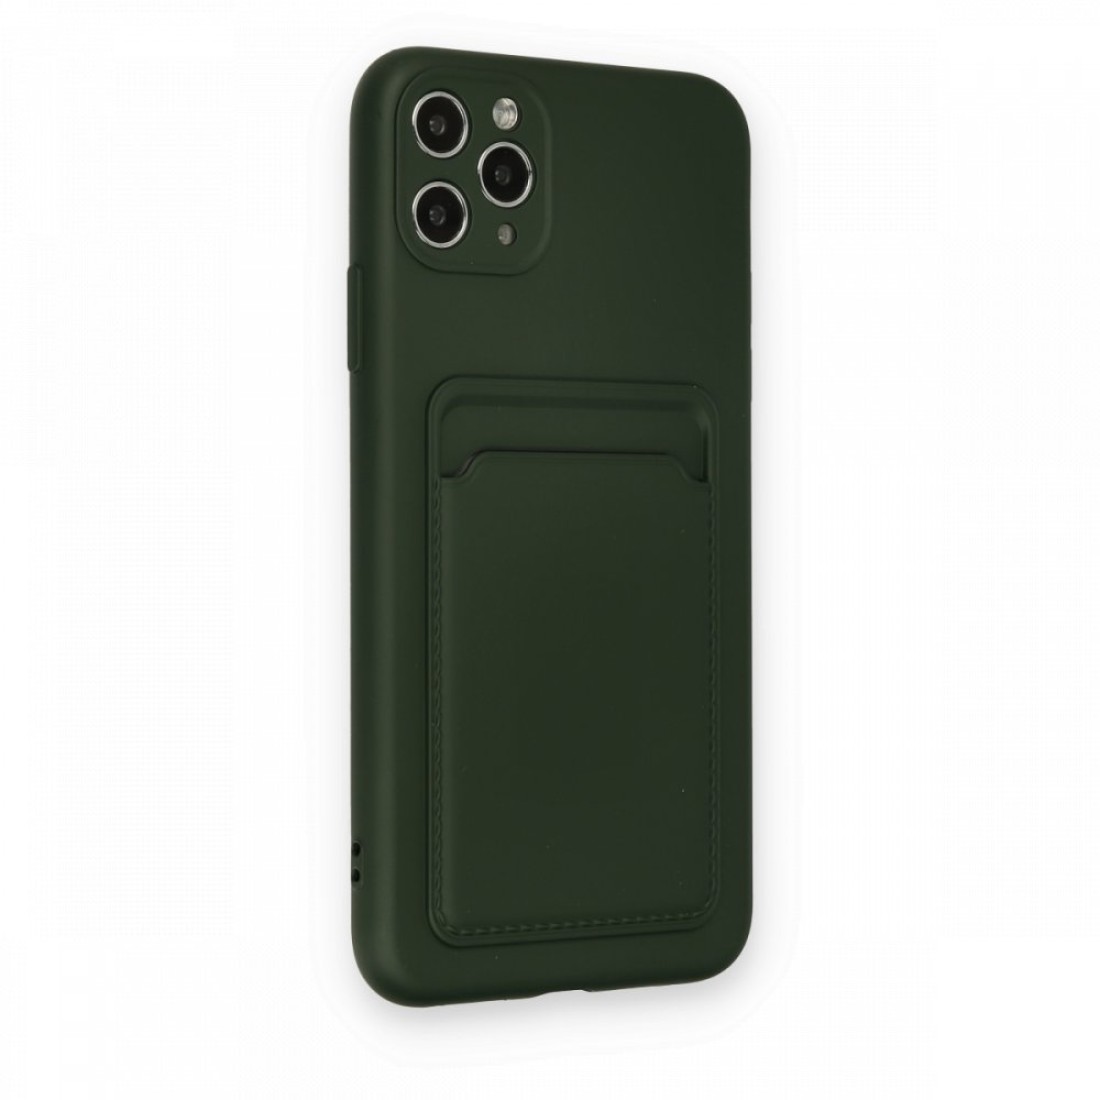 Apple iPhone 11 Pro Max Kılıf Kelvin Kartvizitli Silikon - Koyu Yeşil